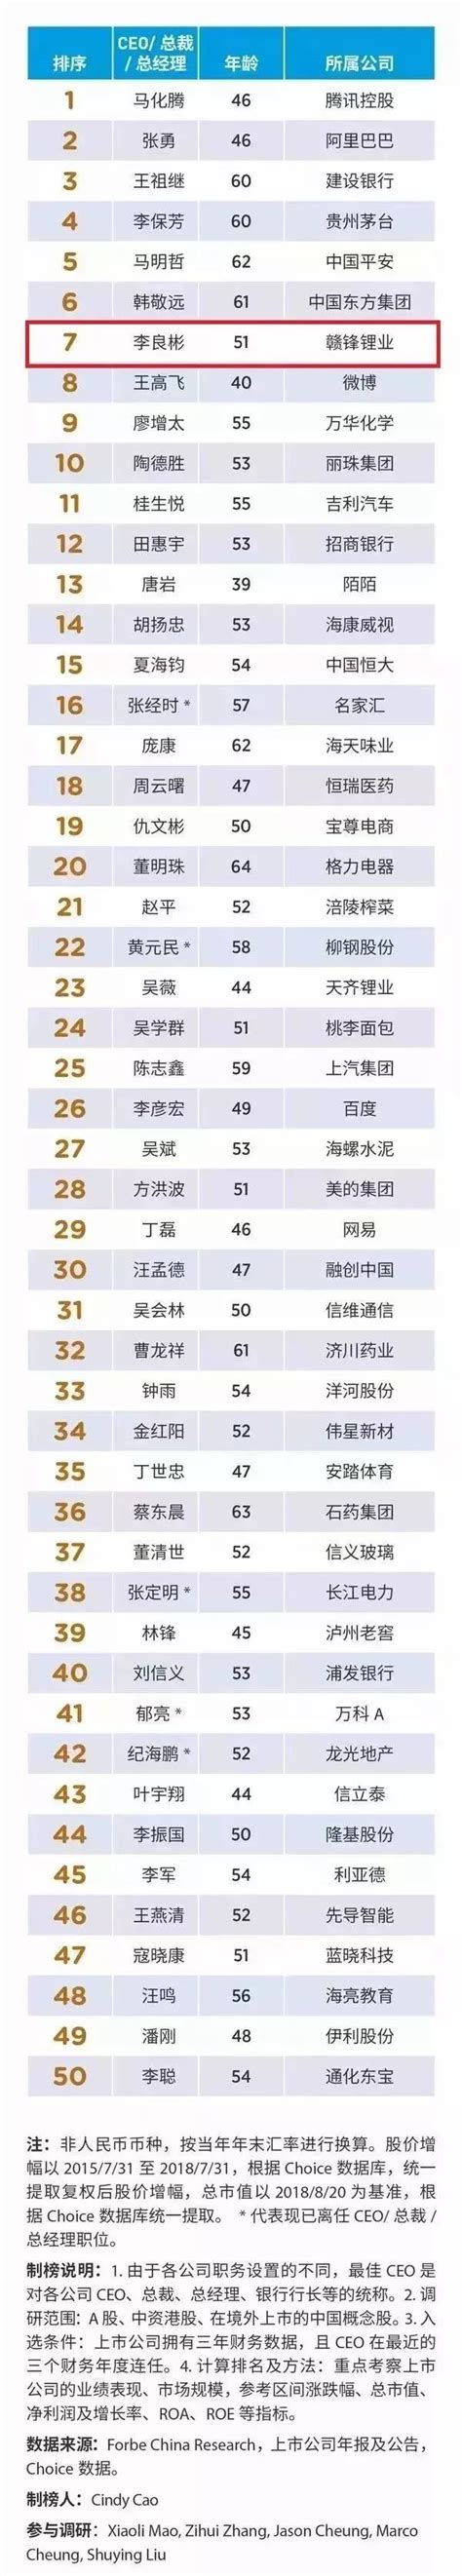 2022年中国半导体封测厂TOP50出炉！金誉排名第35！ - 知乎